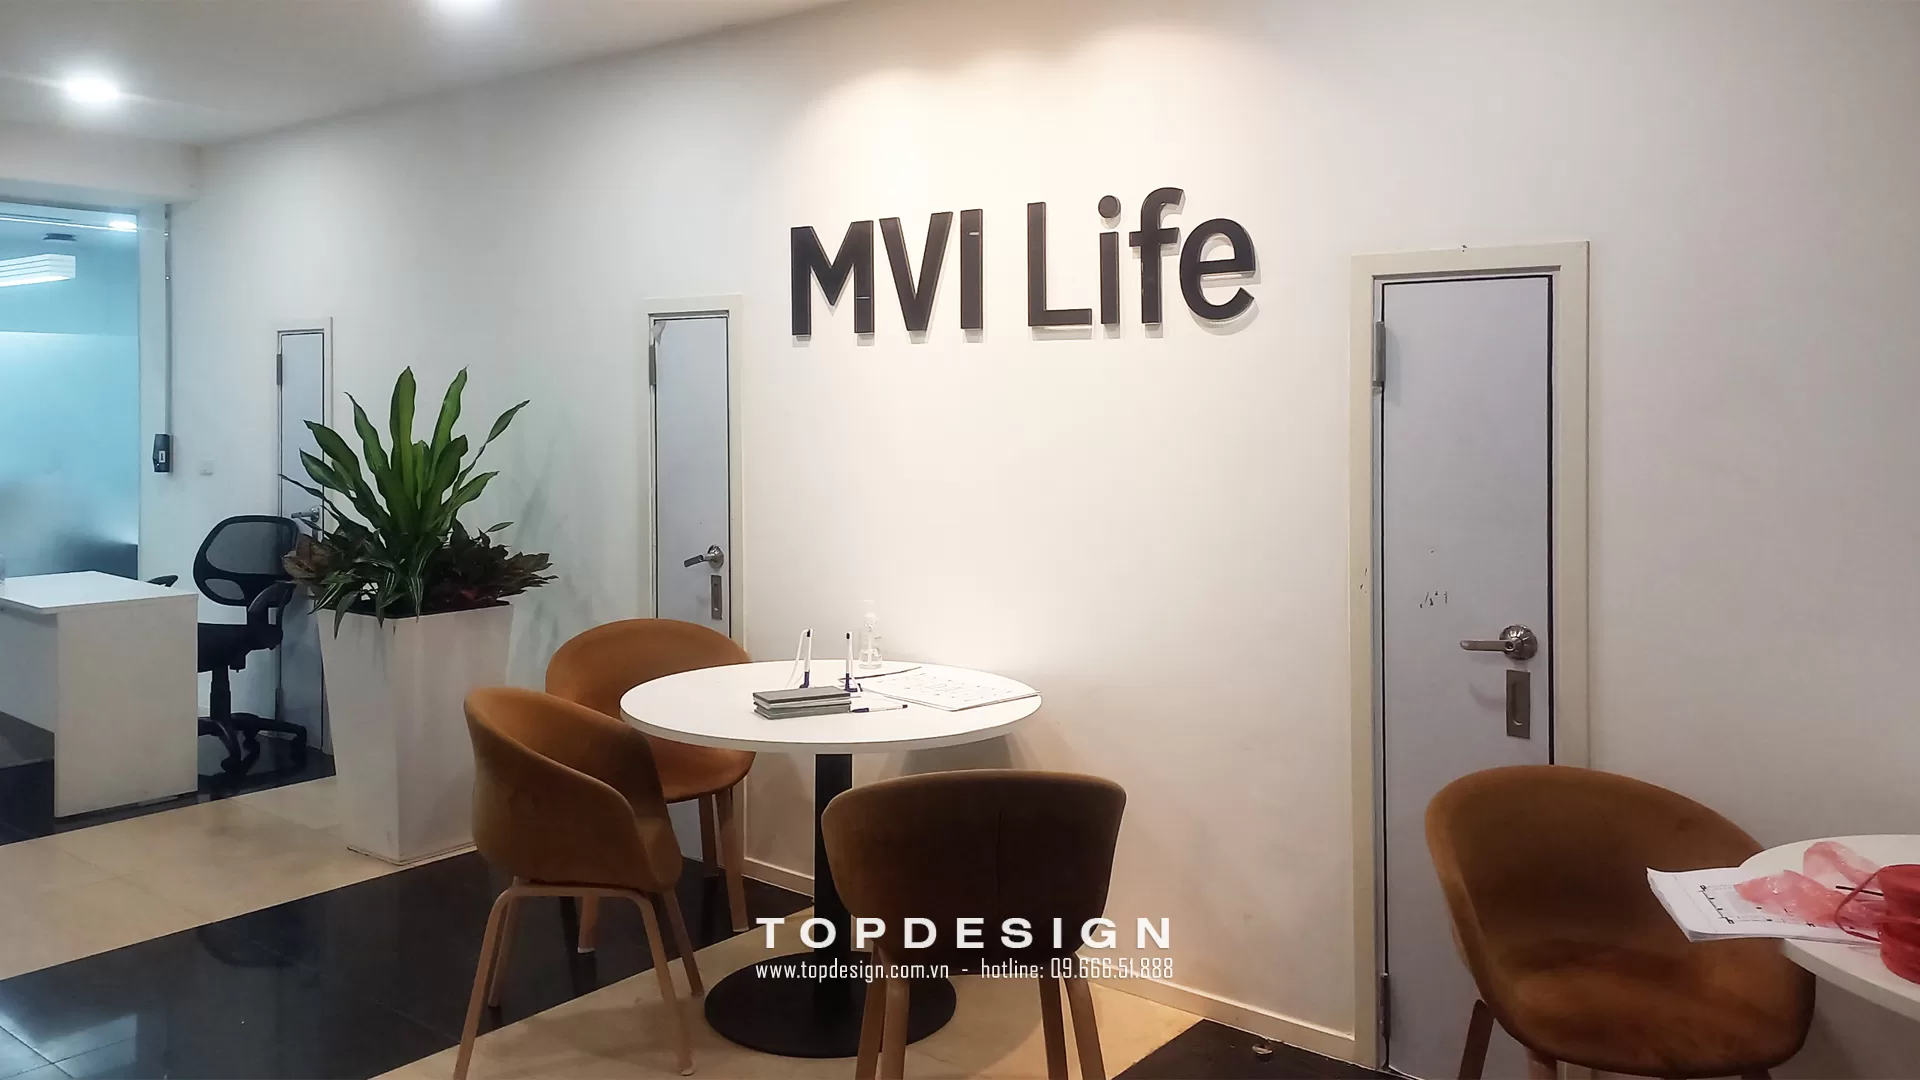 Thi công sảnh văn phòng MVI Life - TOPDESIGN -1 